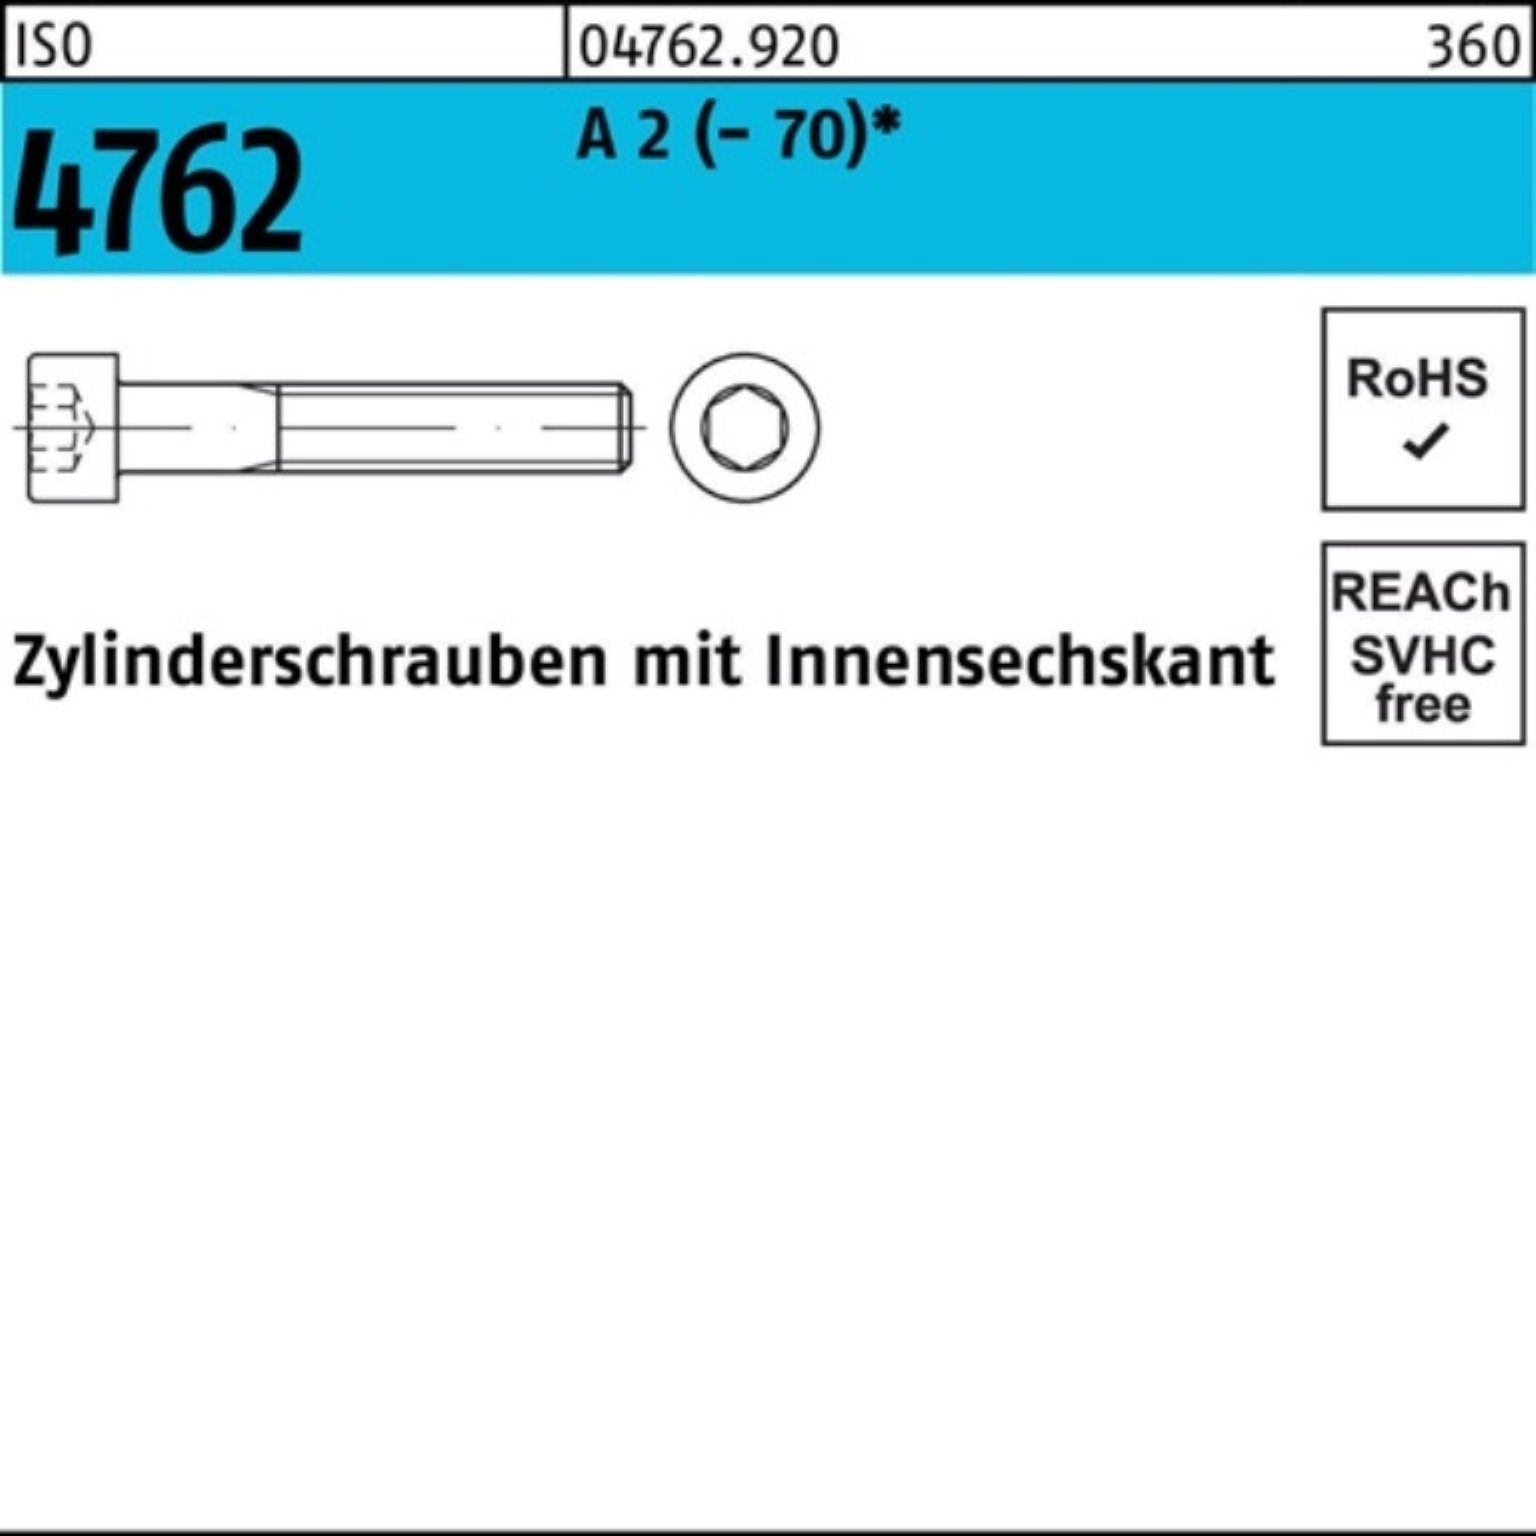 Pack 4762 Reyher S ISO 65 Zylinderschraube A 2 M6x (70) Zylinderschraube Innen-6kt 100er 100